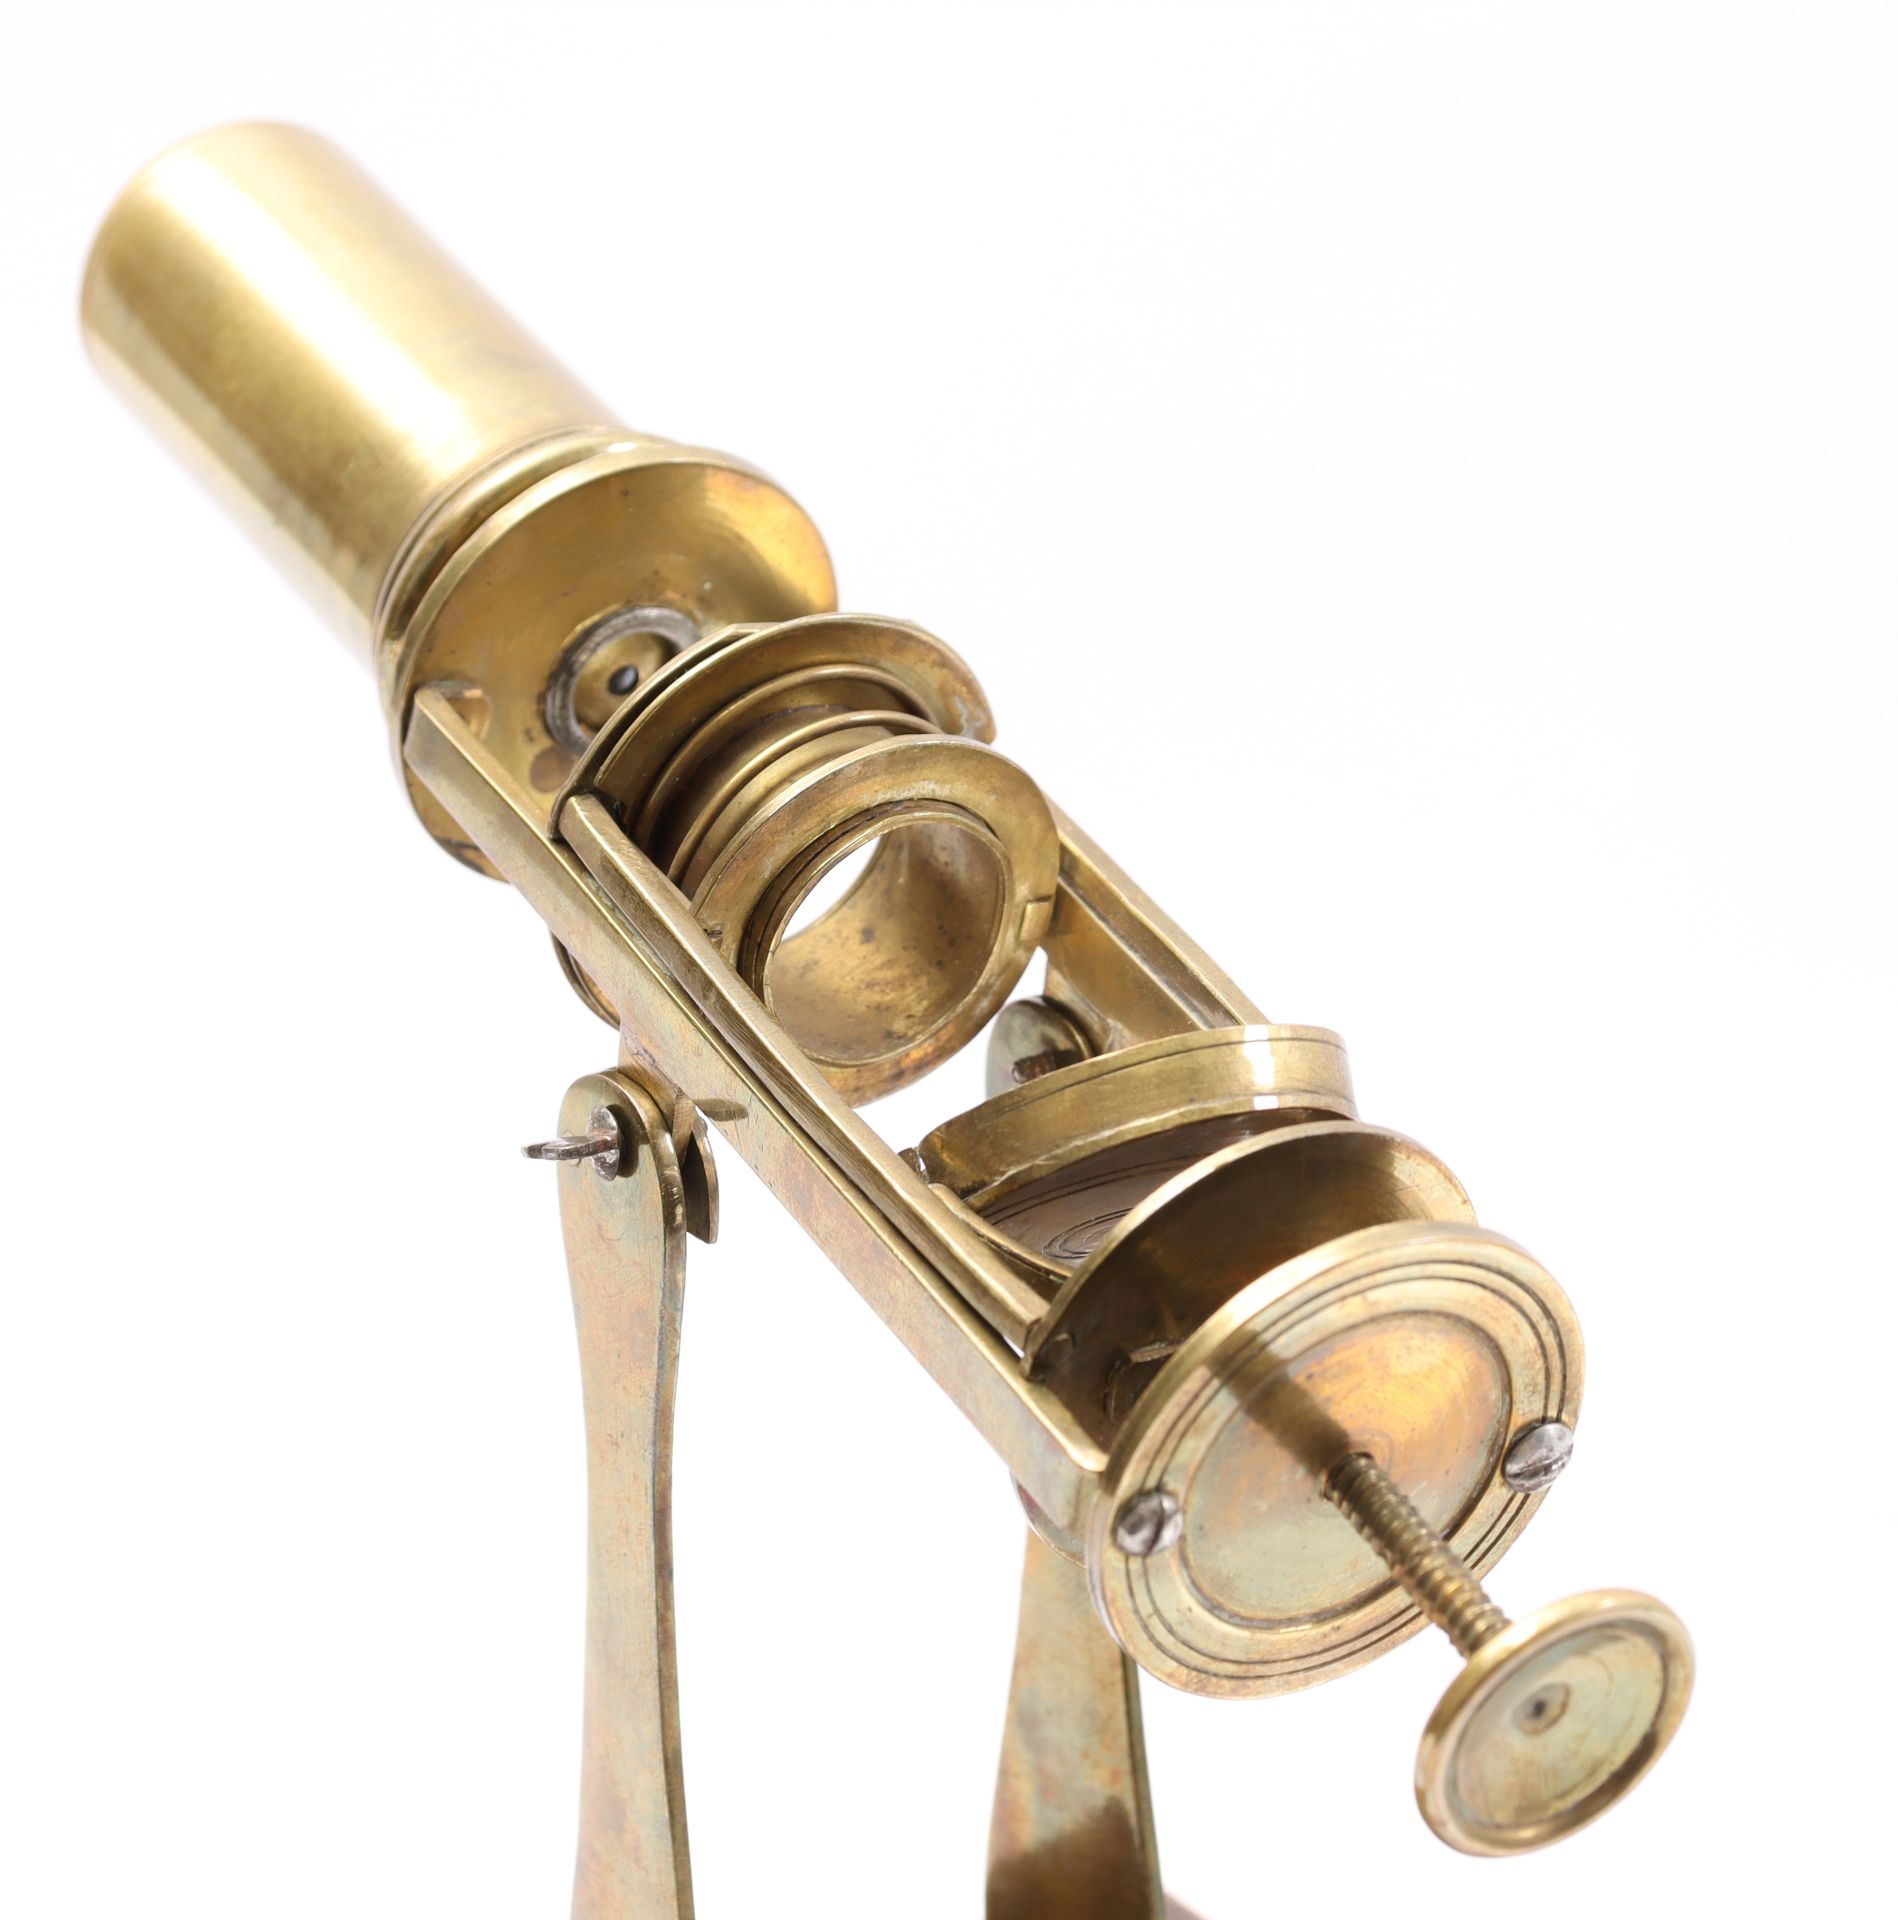 Brass travel microscope in wooden box - Bild 6 aus 10